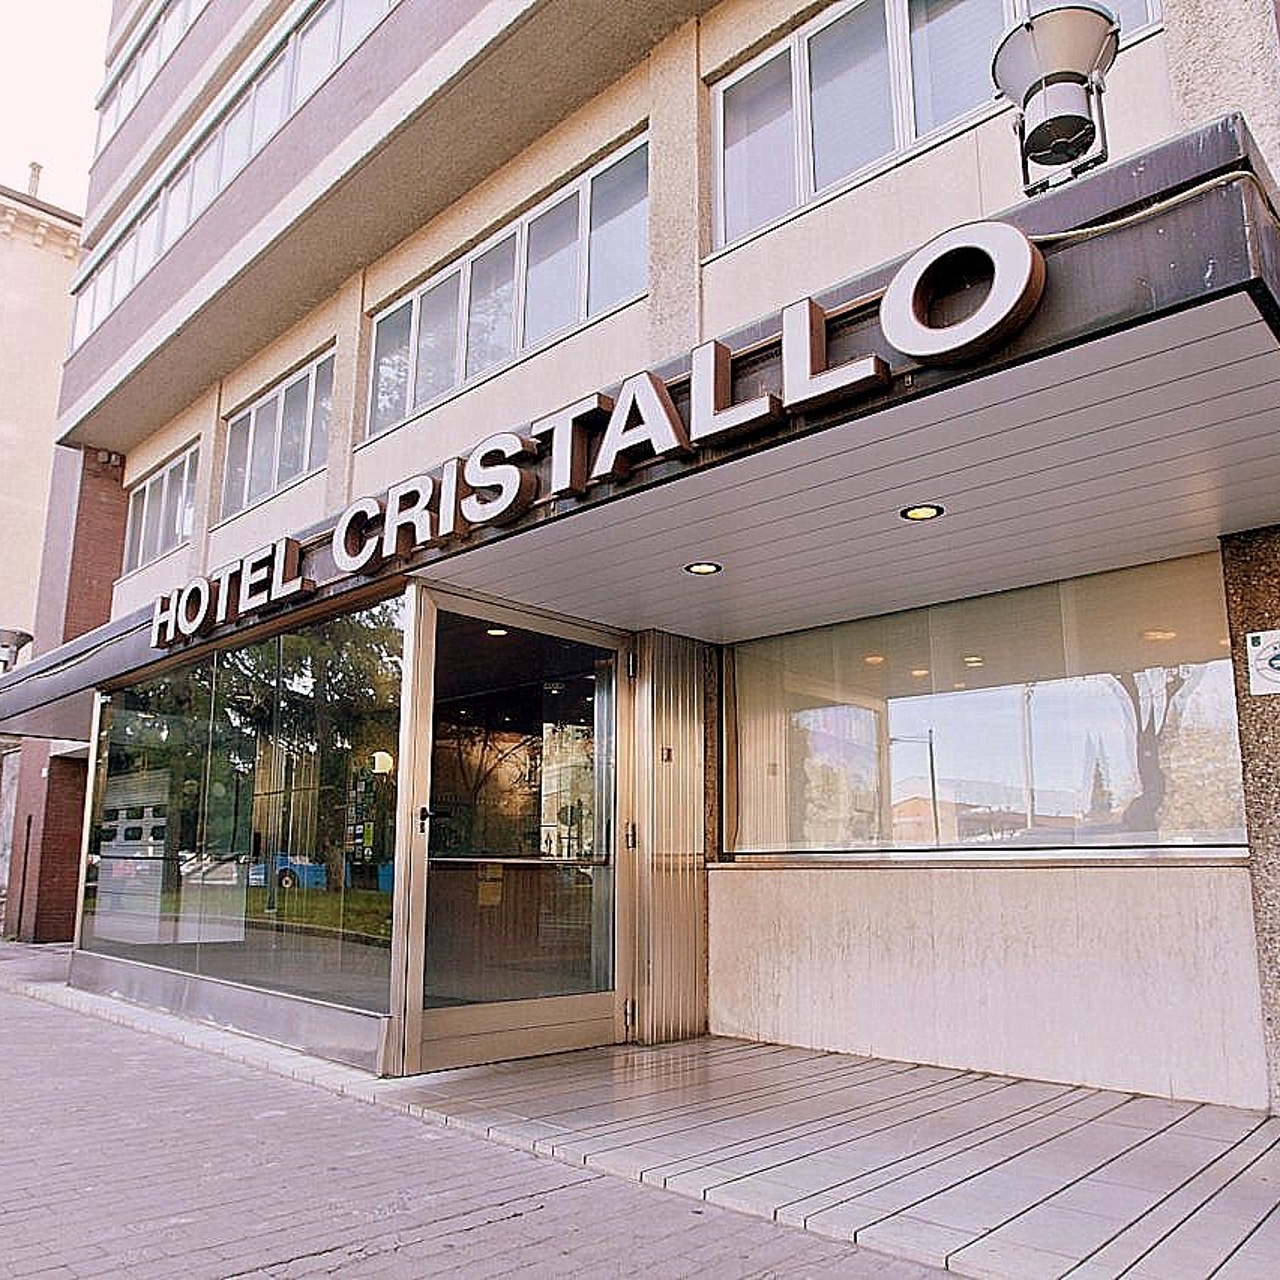 Hotel Cristallo - Udine presso HRS con servizi gratuiti